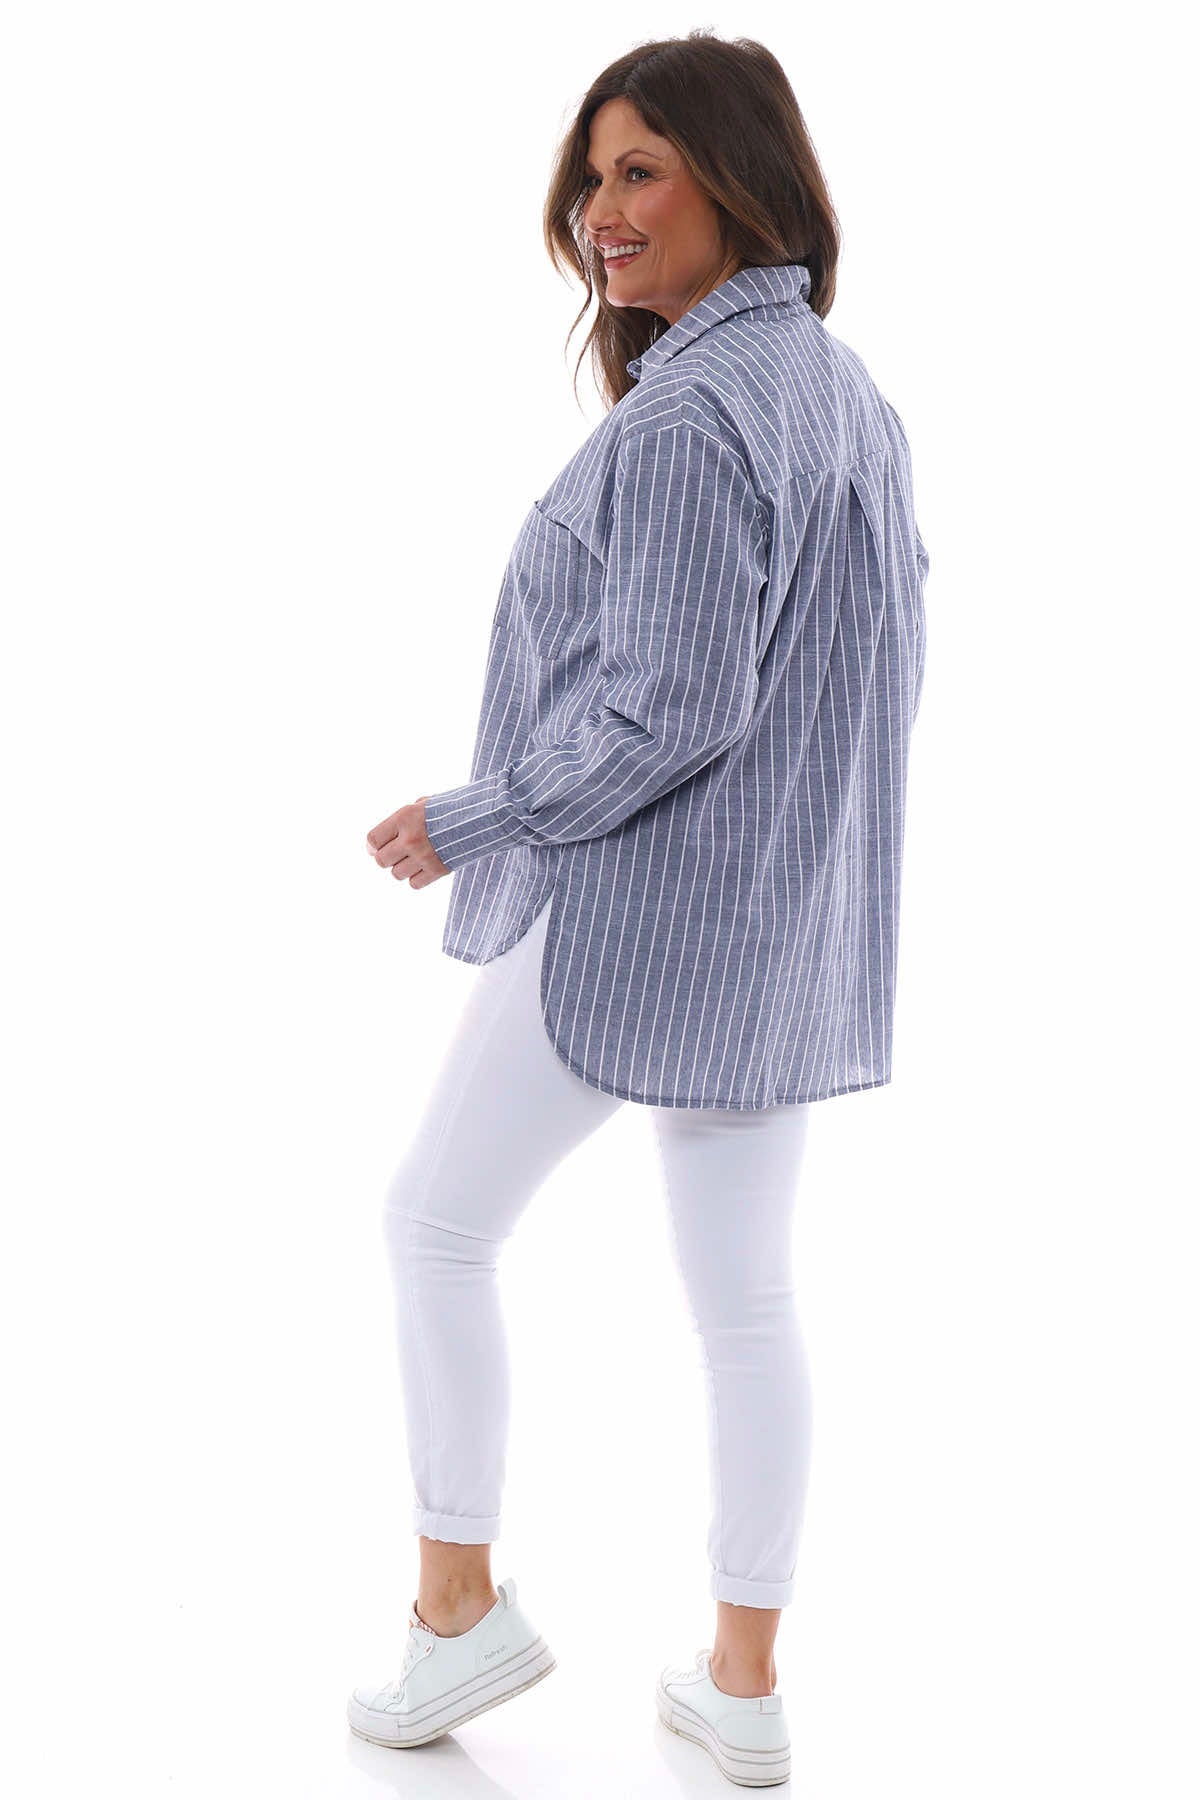 Avani Stripe Cotton Shirt Blue Grey